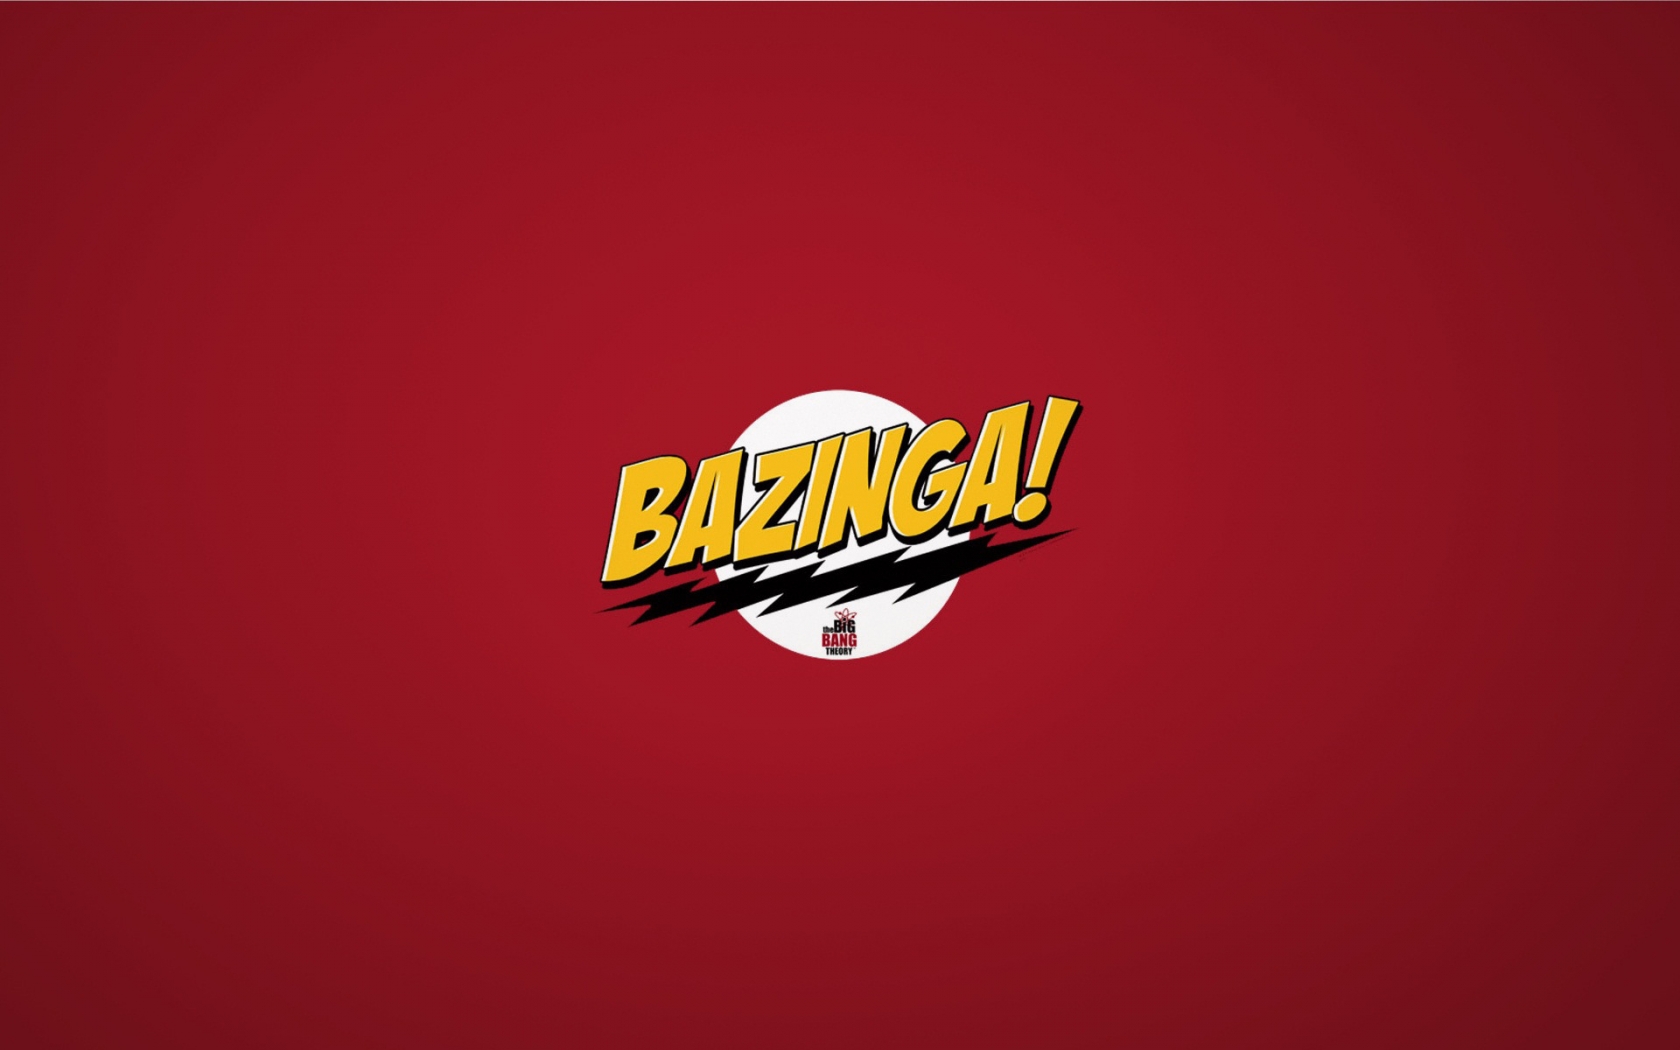 The Big Bang Theory Bazinga for 1680 x 1050 widescreen resolution